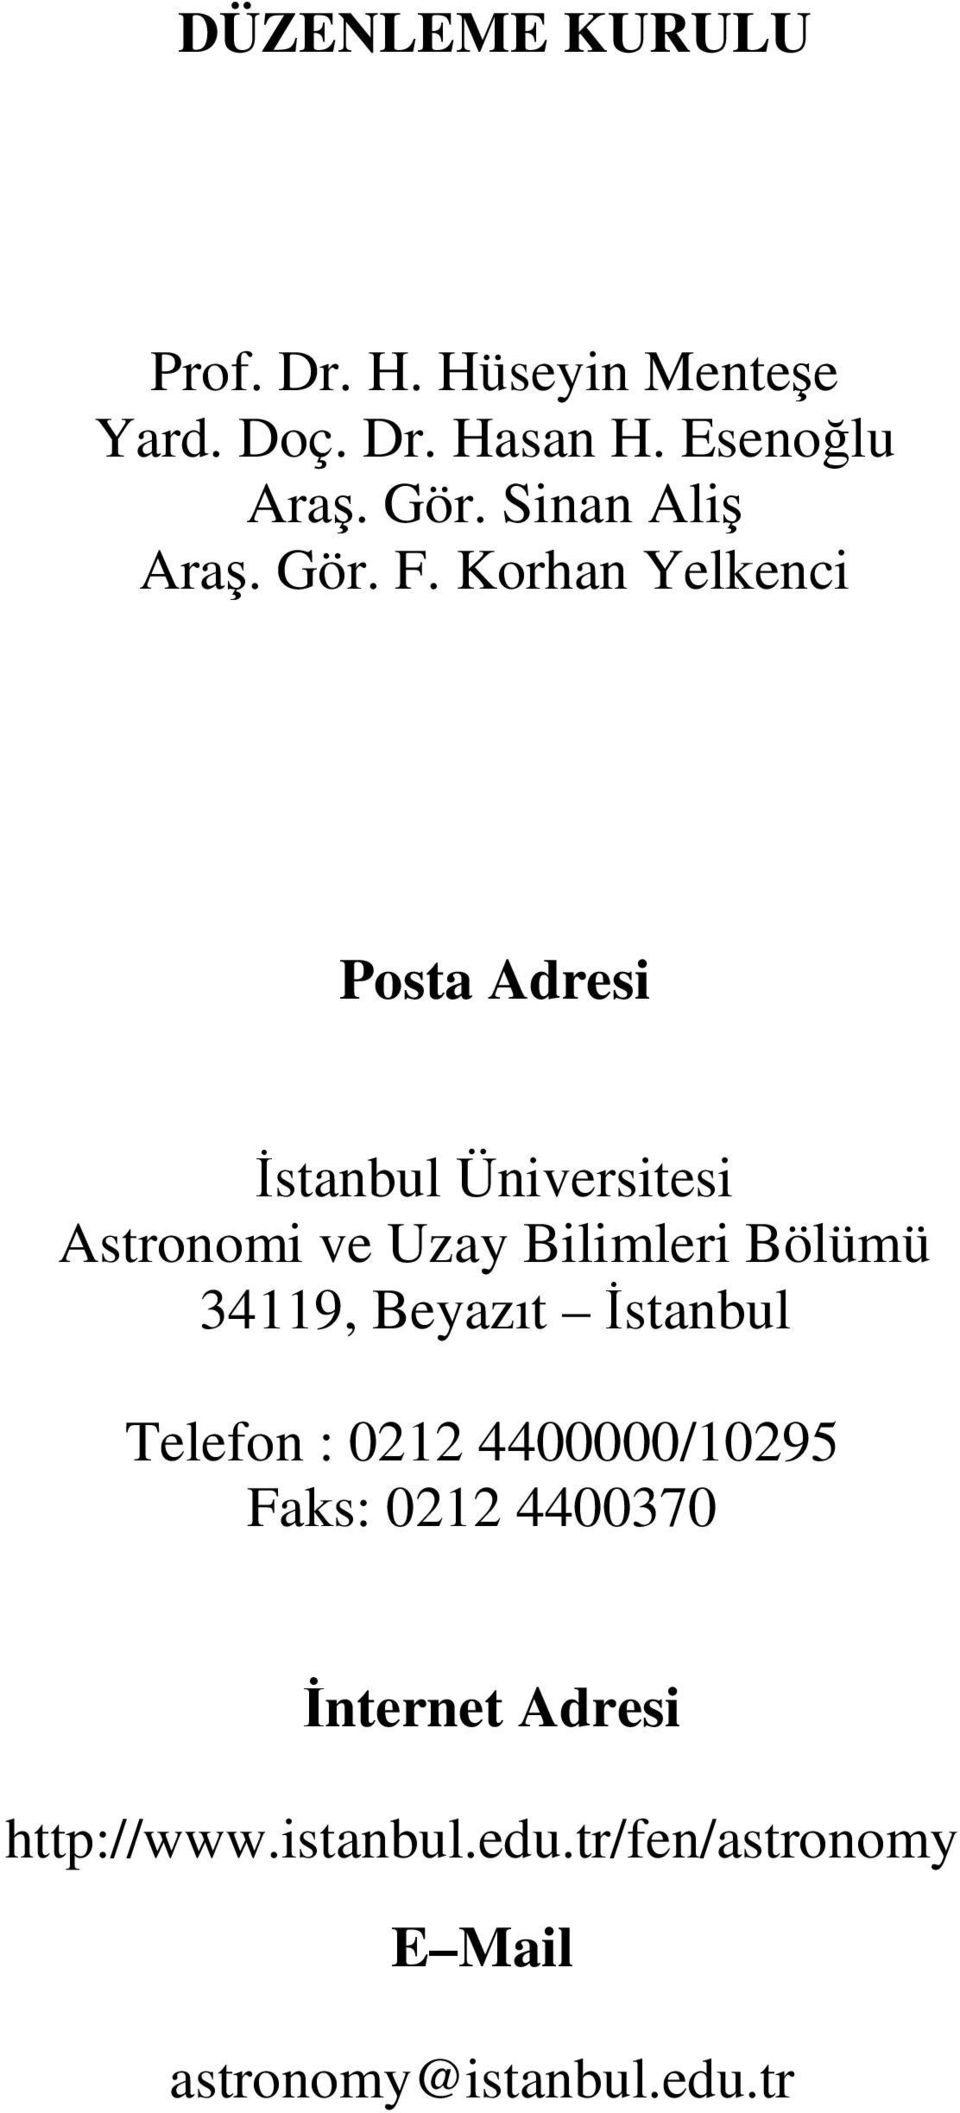 Korhan Yelkenci Posta Adresi İstanbul Üniversitesi Astronomi ve Uzay Bilimleri Bölümü